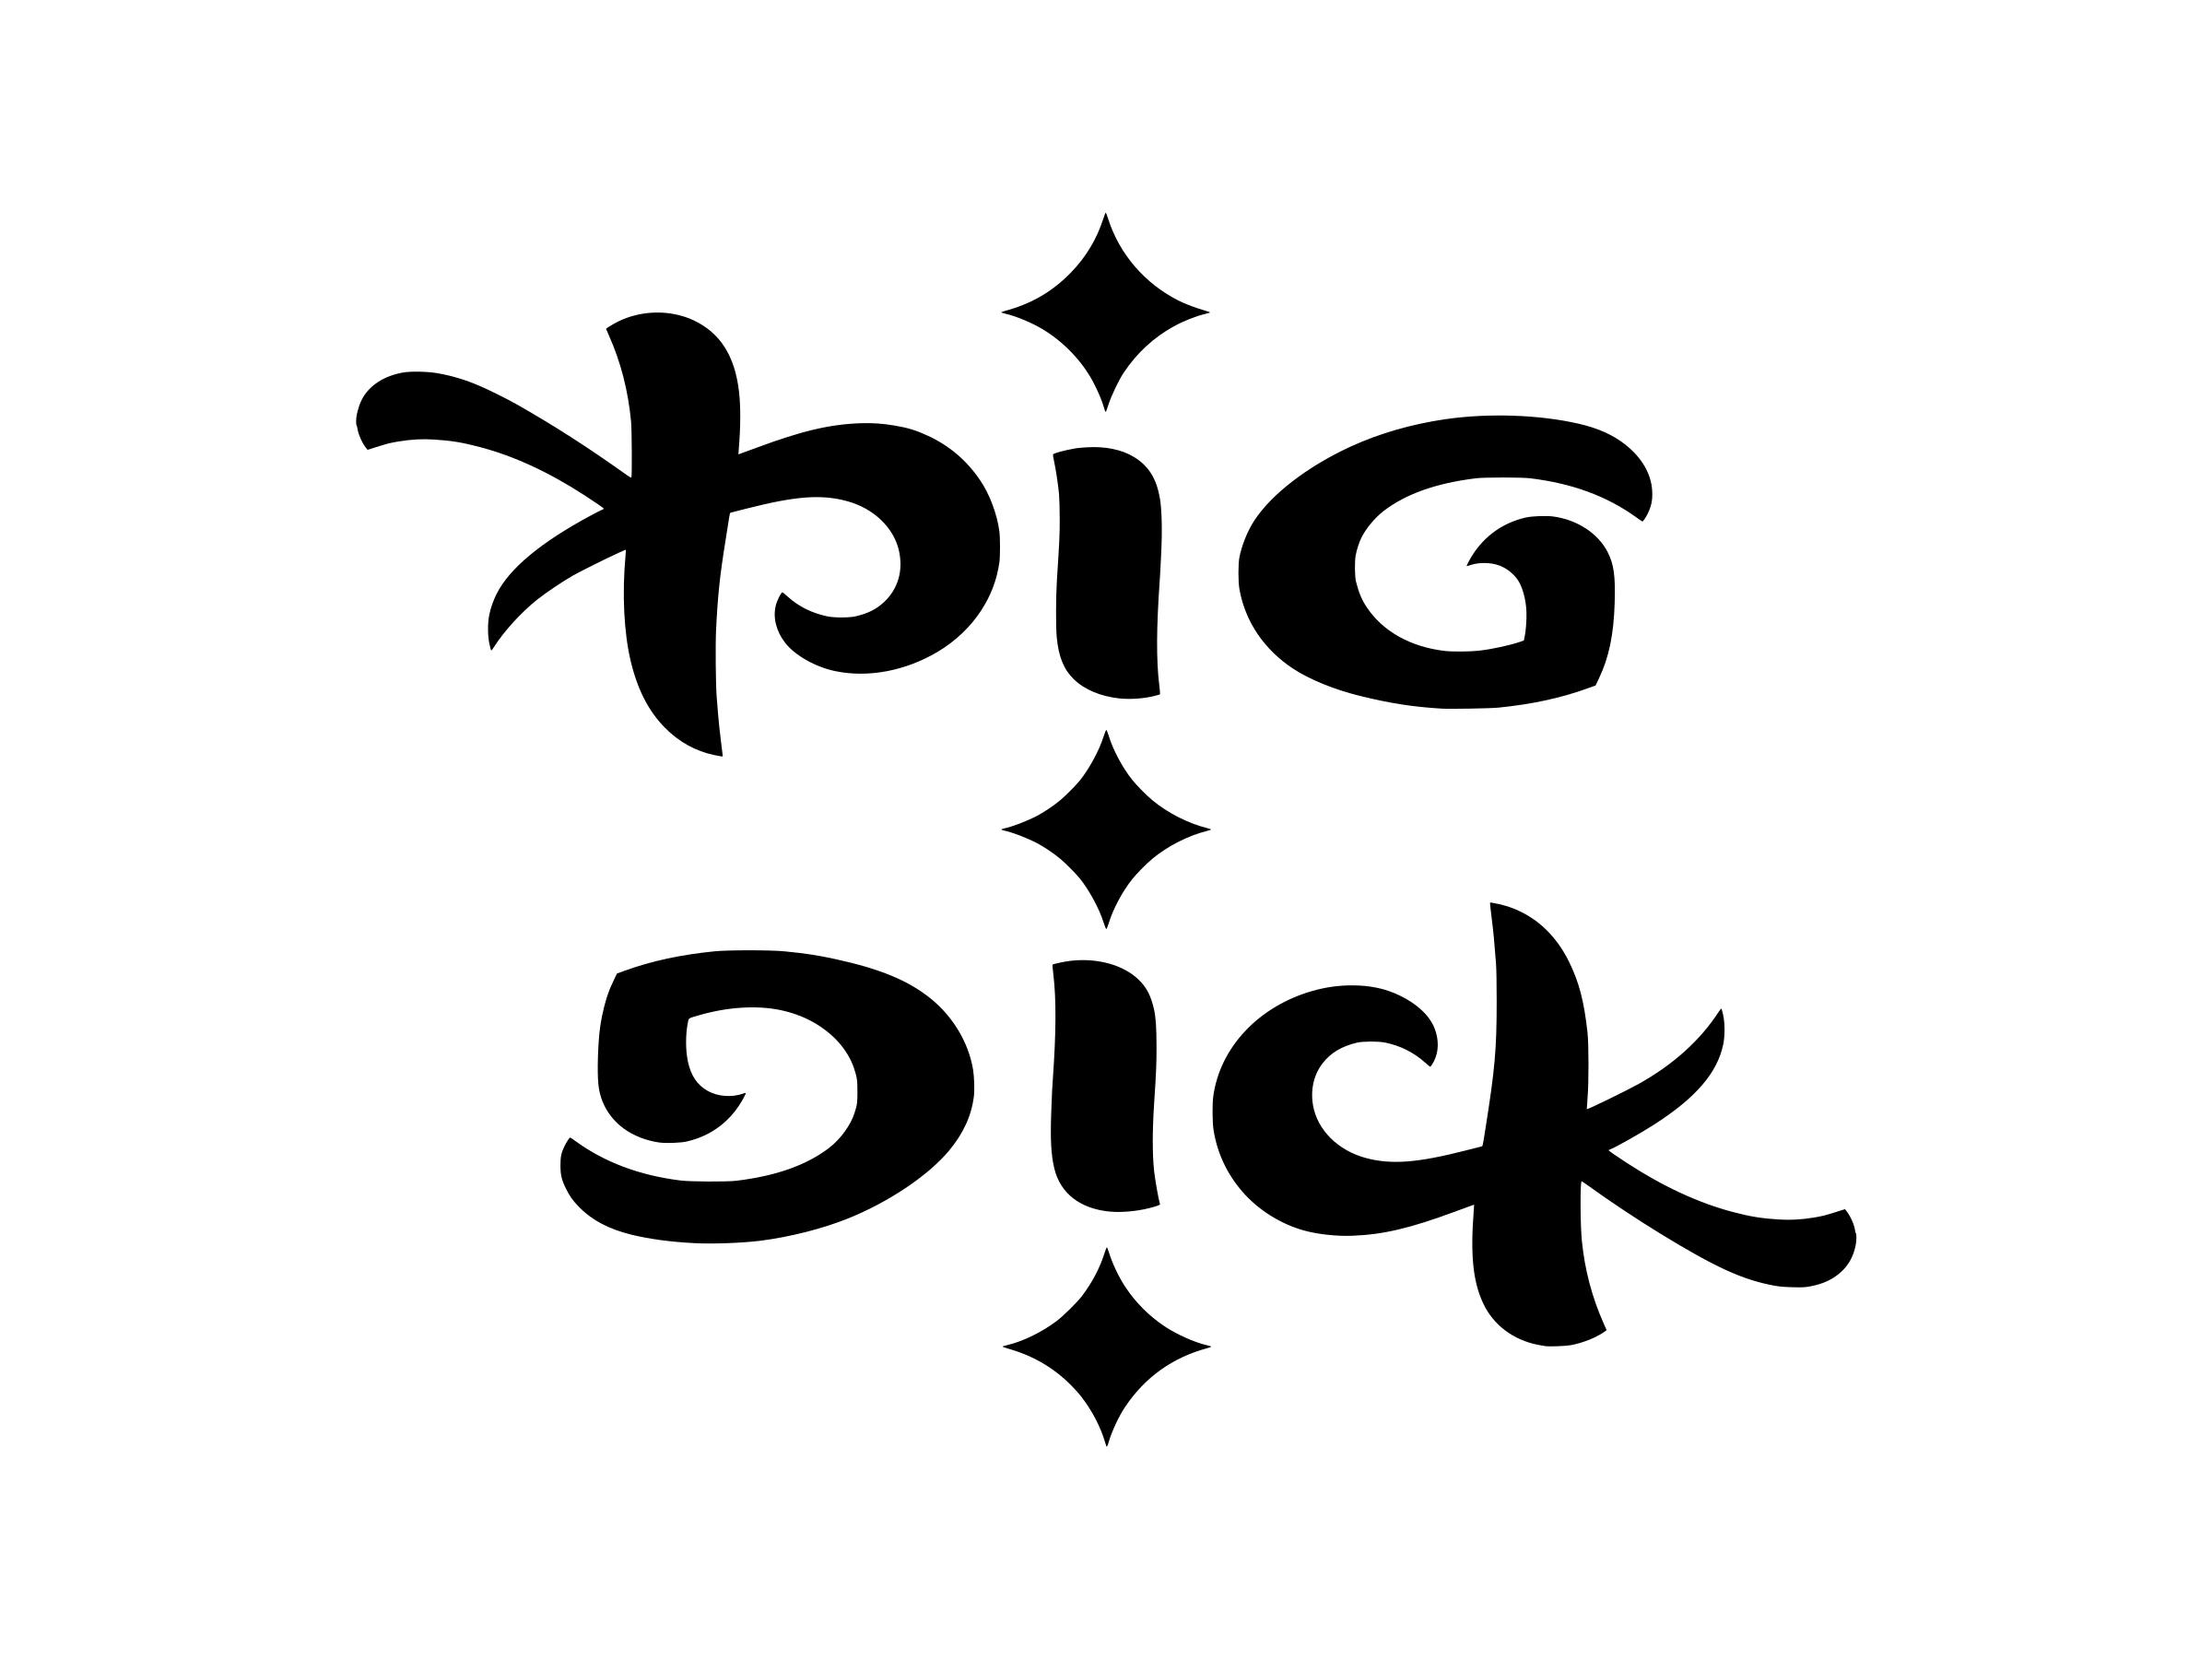 Hugh Dick Pics